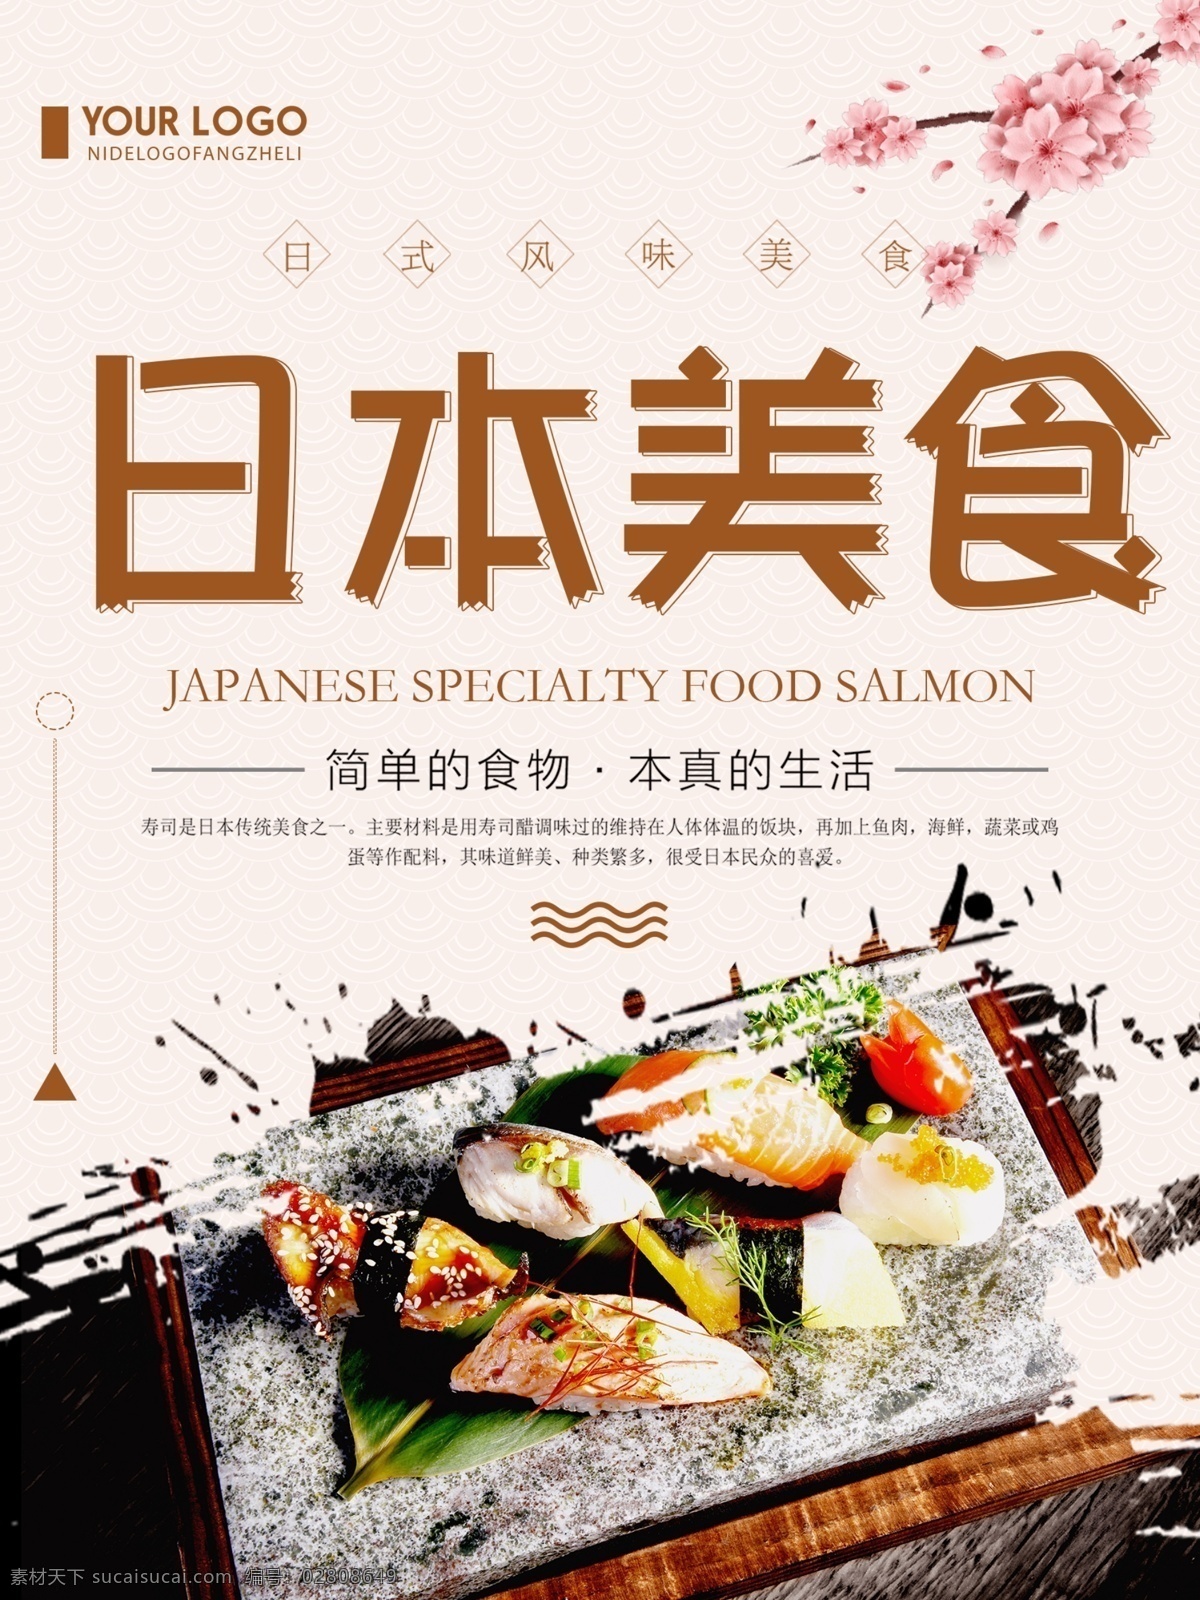 清新 简约 日本 美食 宣传海报 日本美食 美食海报 简约美食海报 清新海报设计 创意